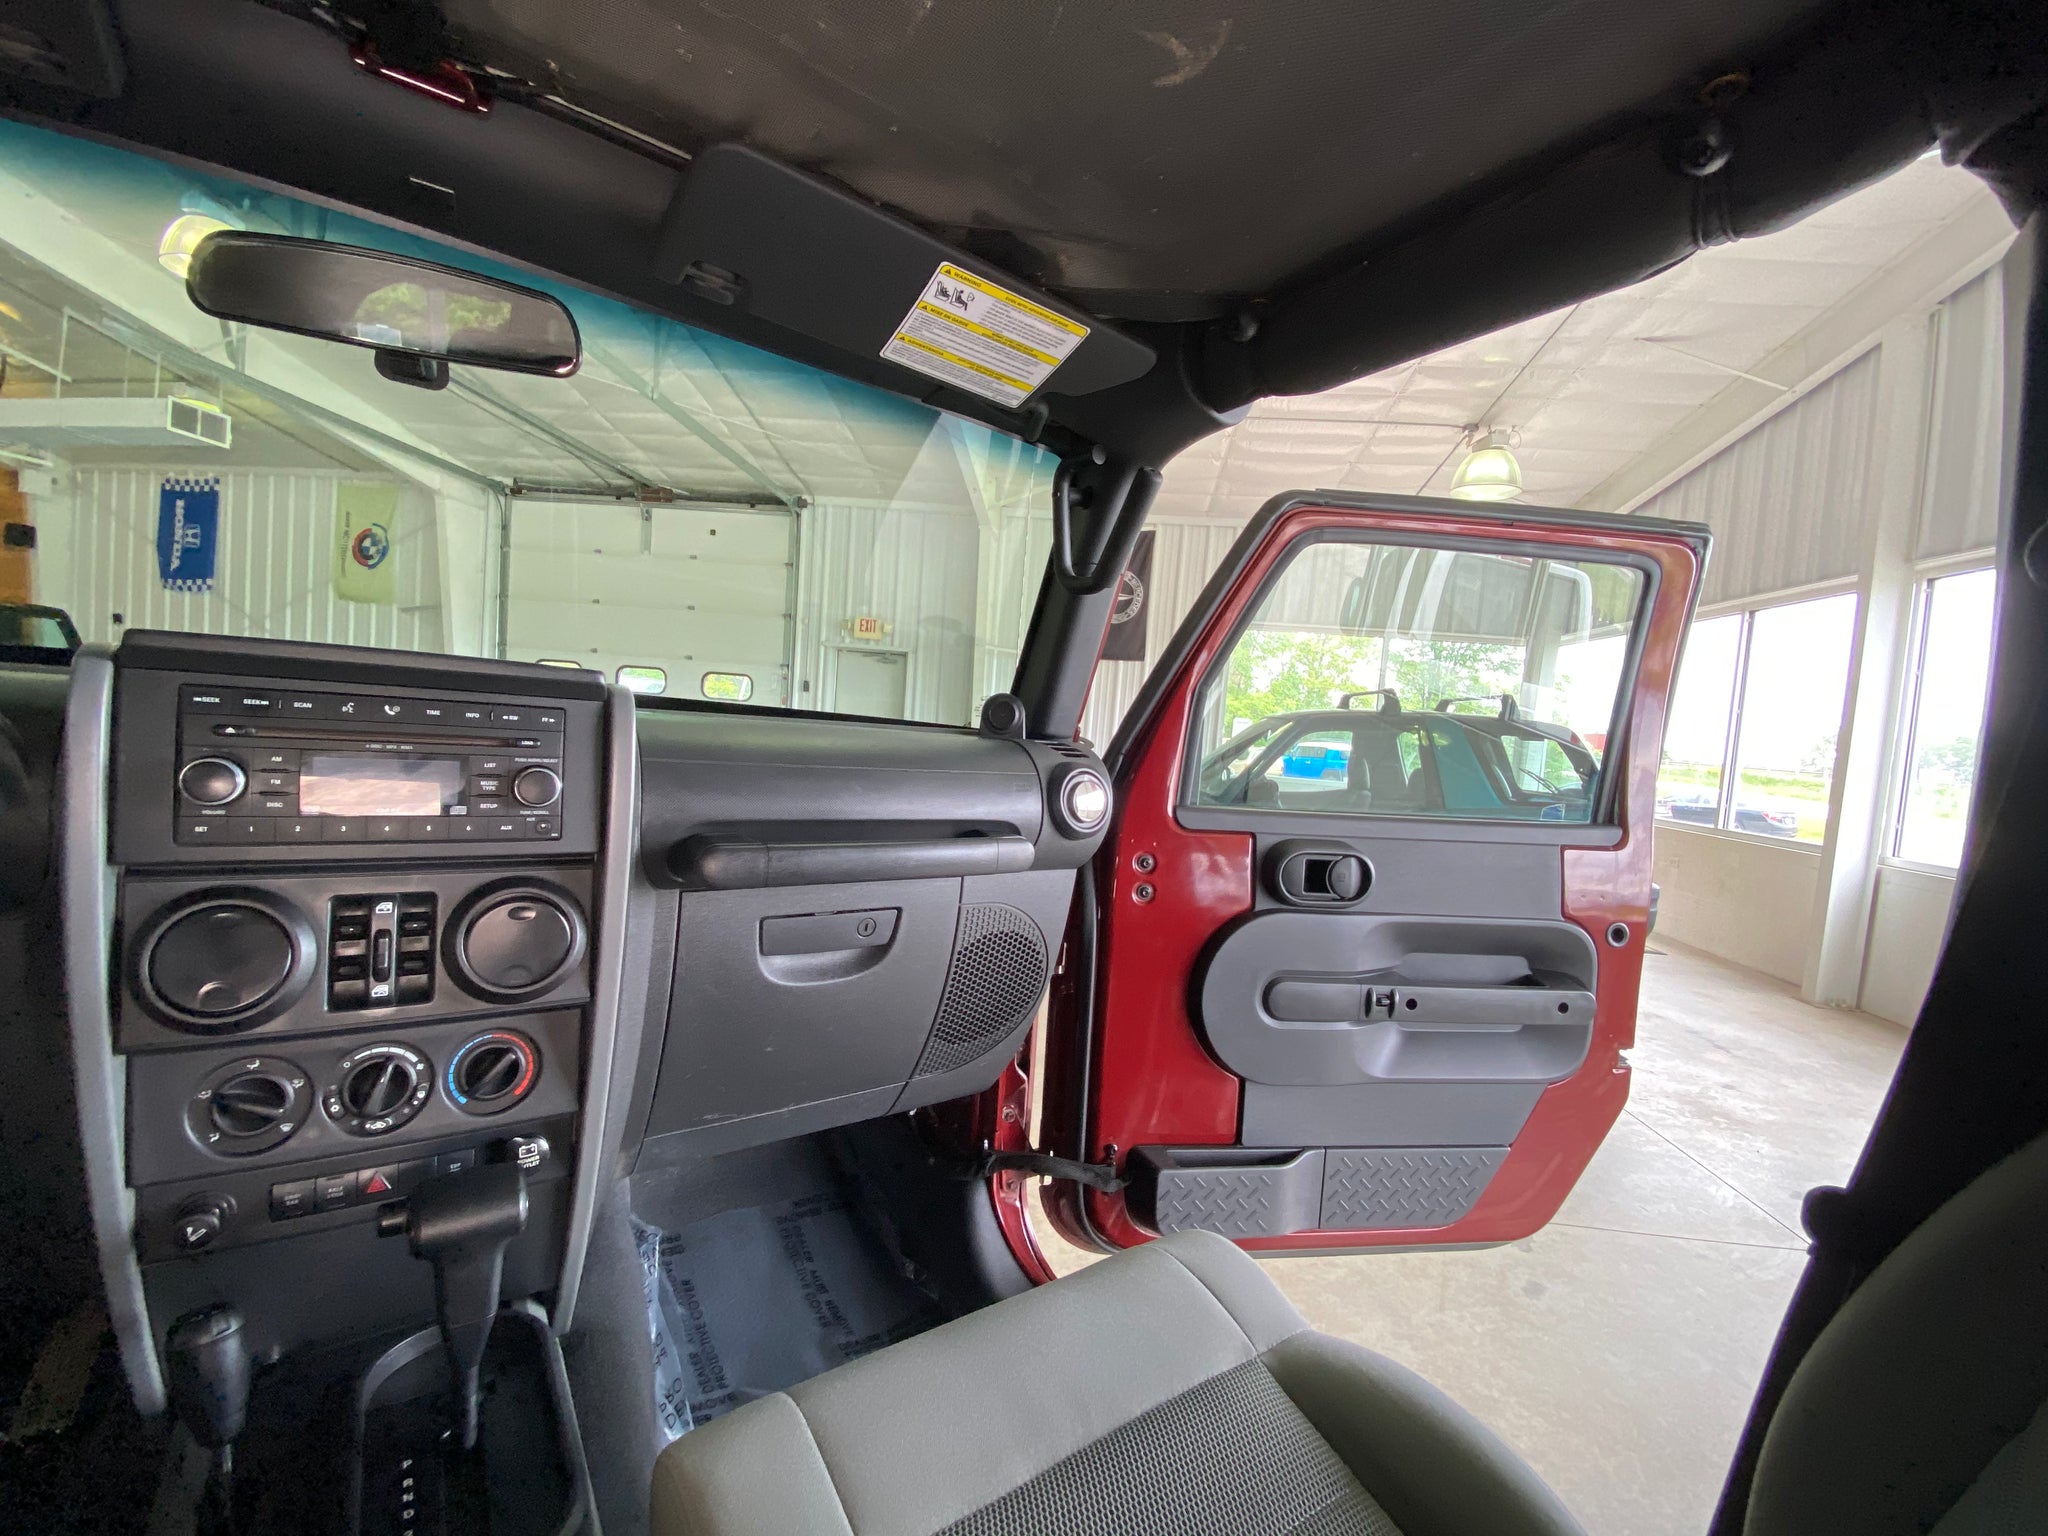 2008 Jeep Wrangler Unlimited Rubicon - ShiftedMN